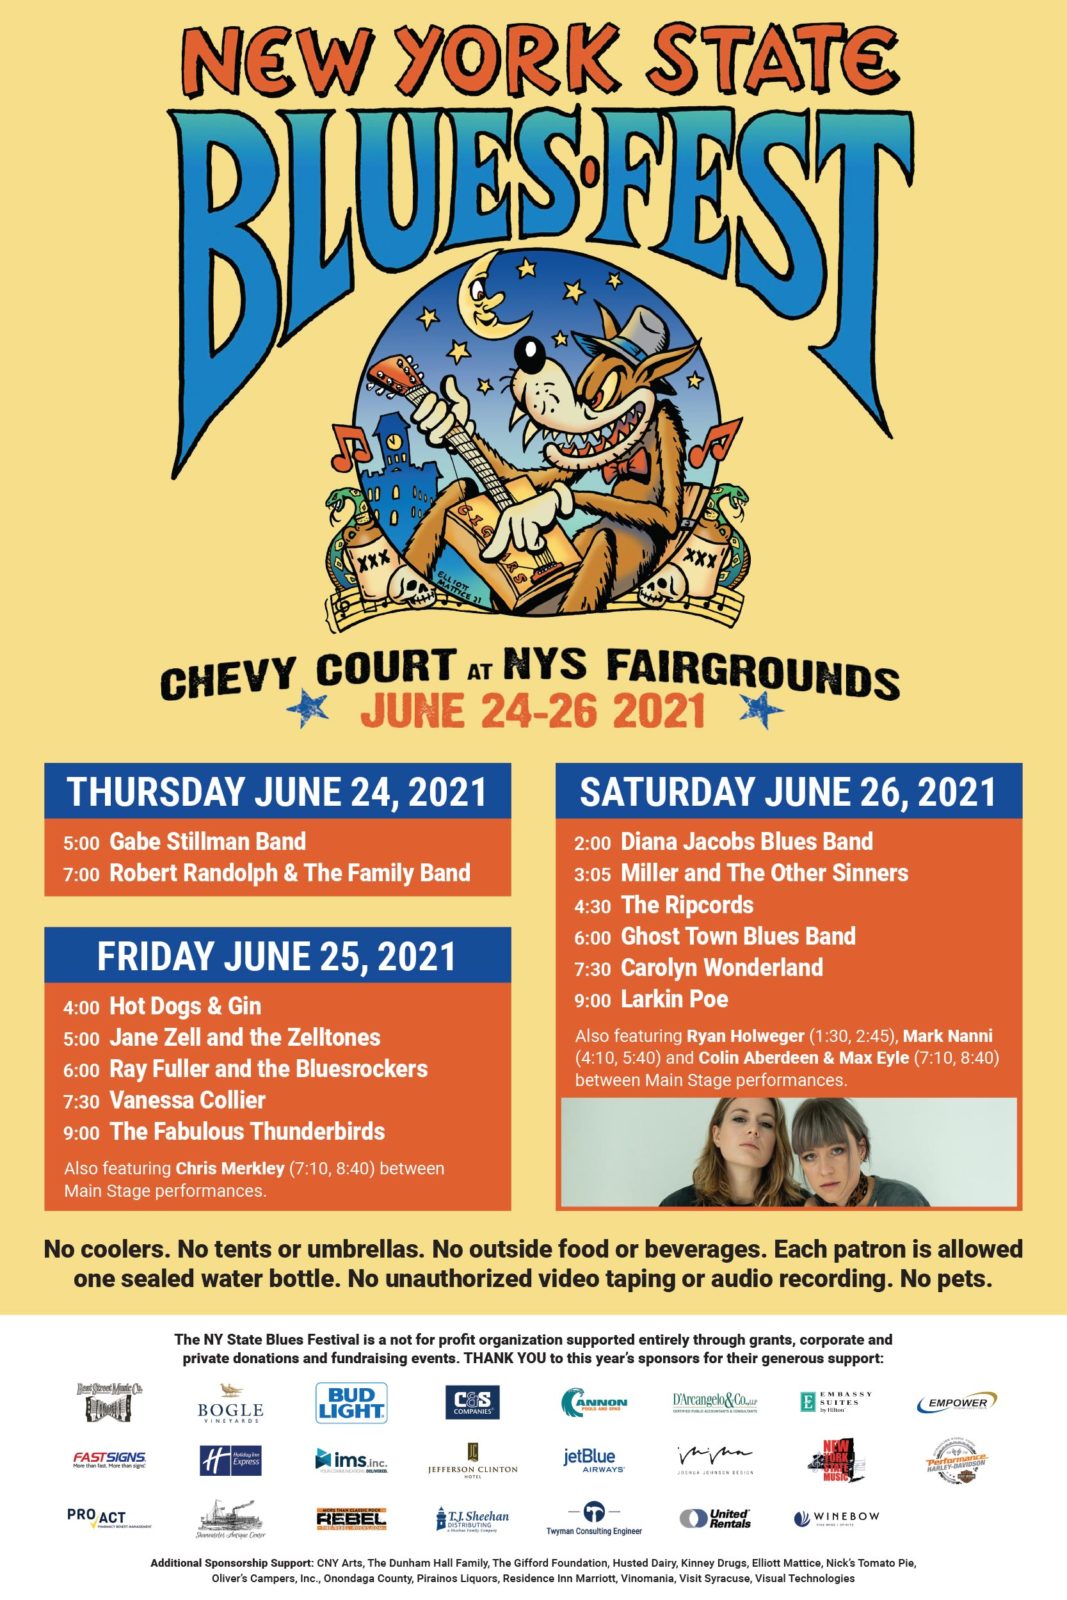 New York State Blues Festival June 242526, 2021